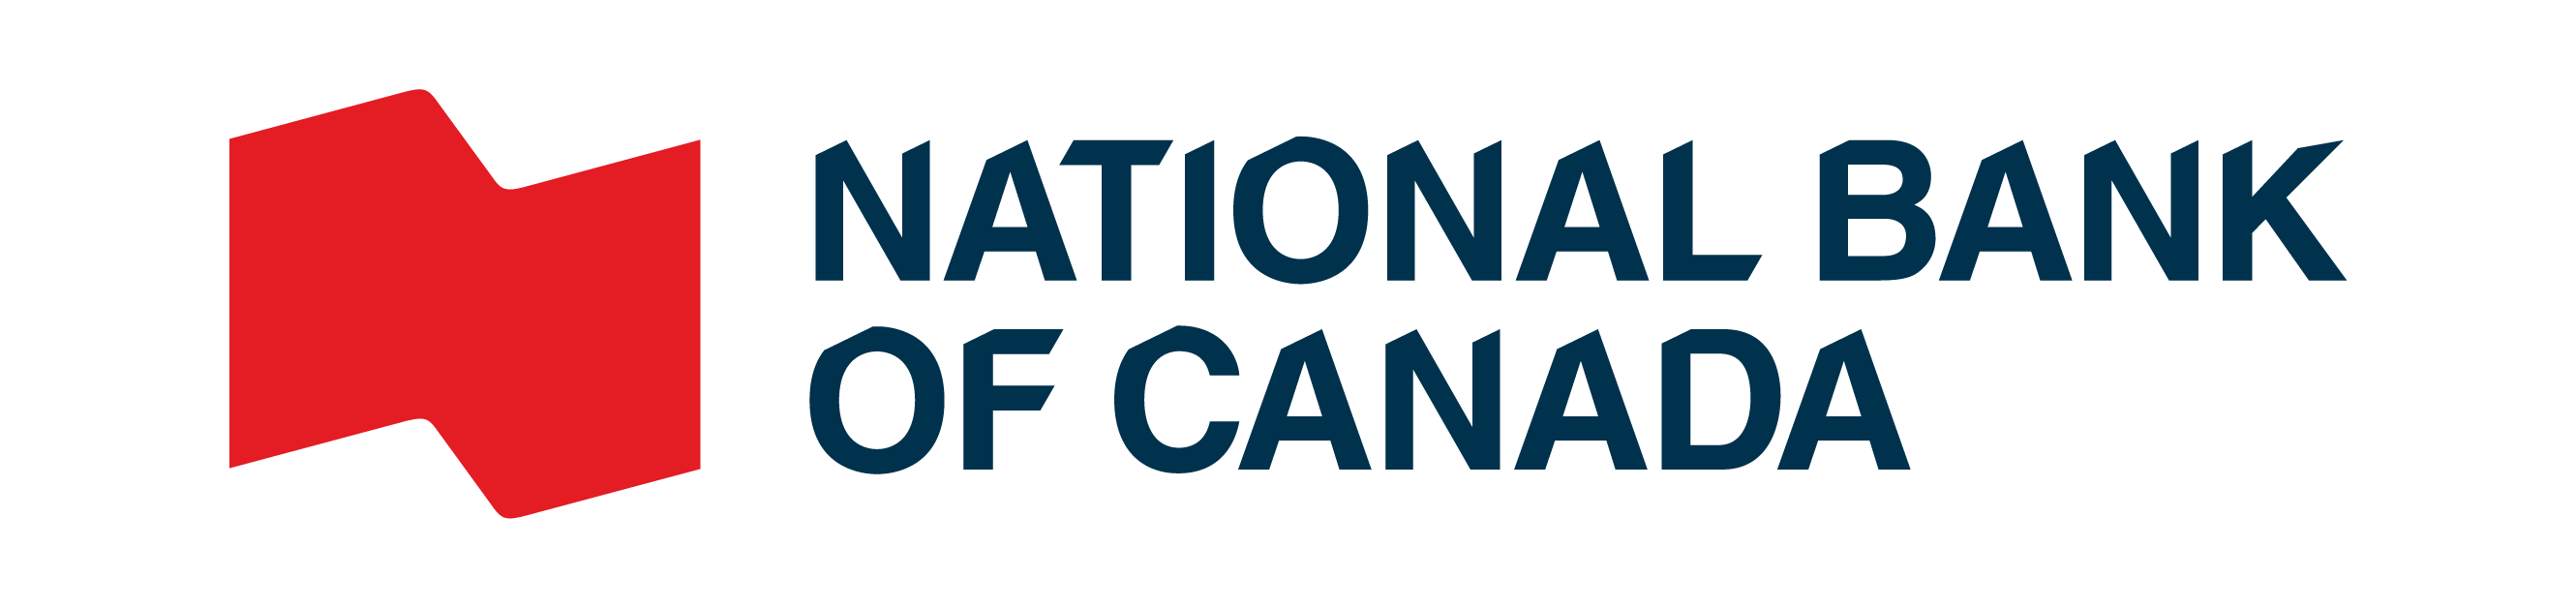 カナダ・ナショナル銀行のロゴ